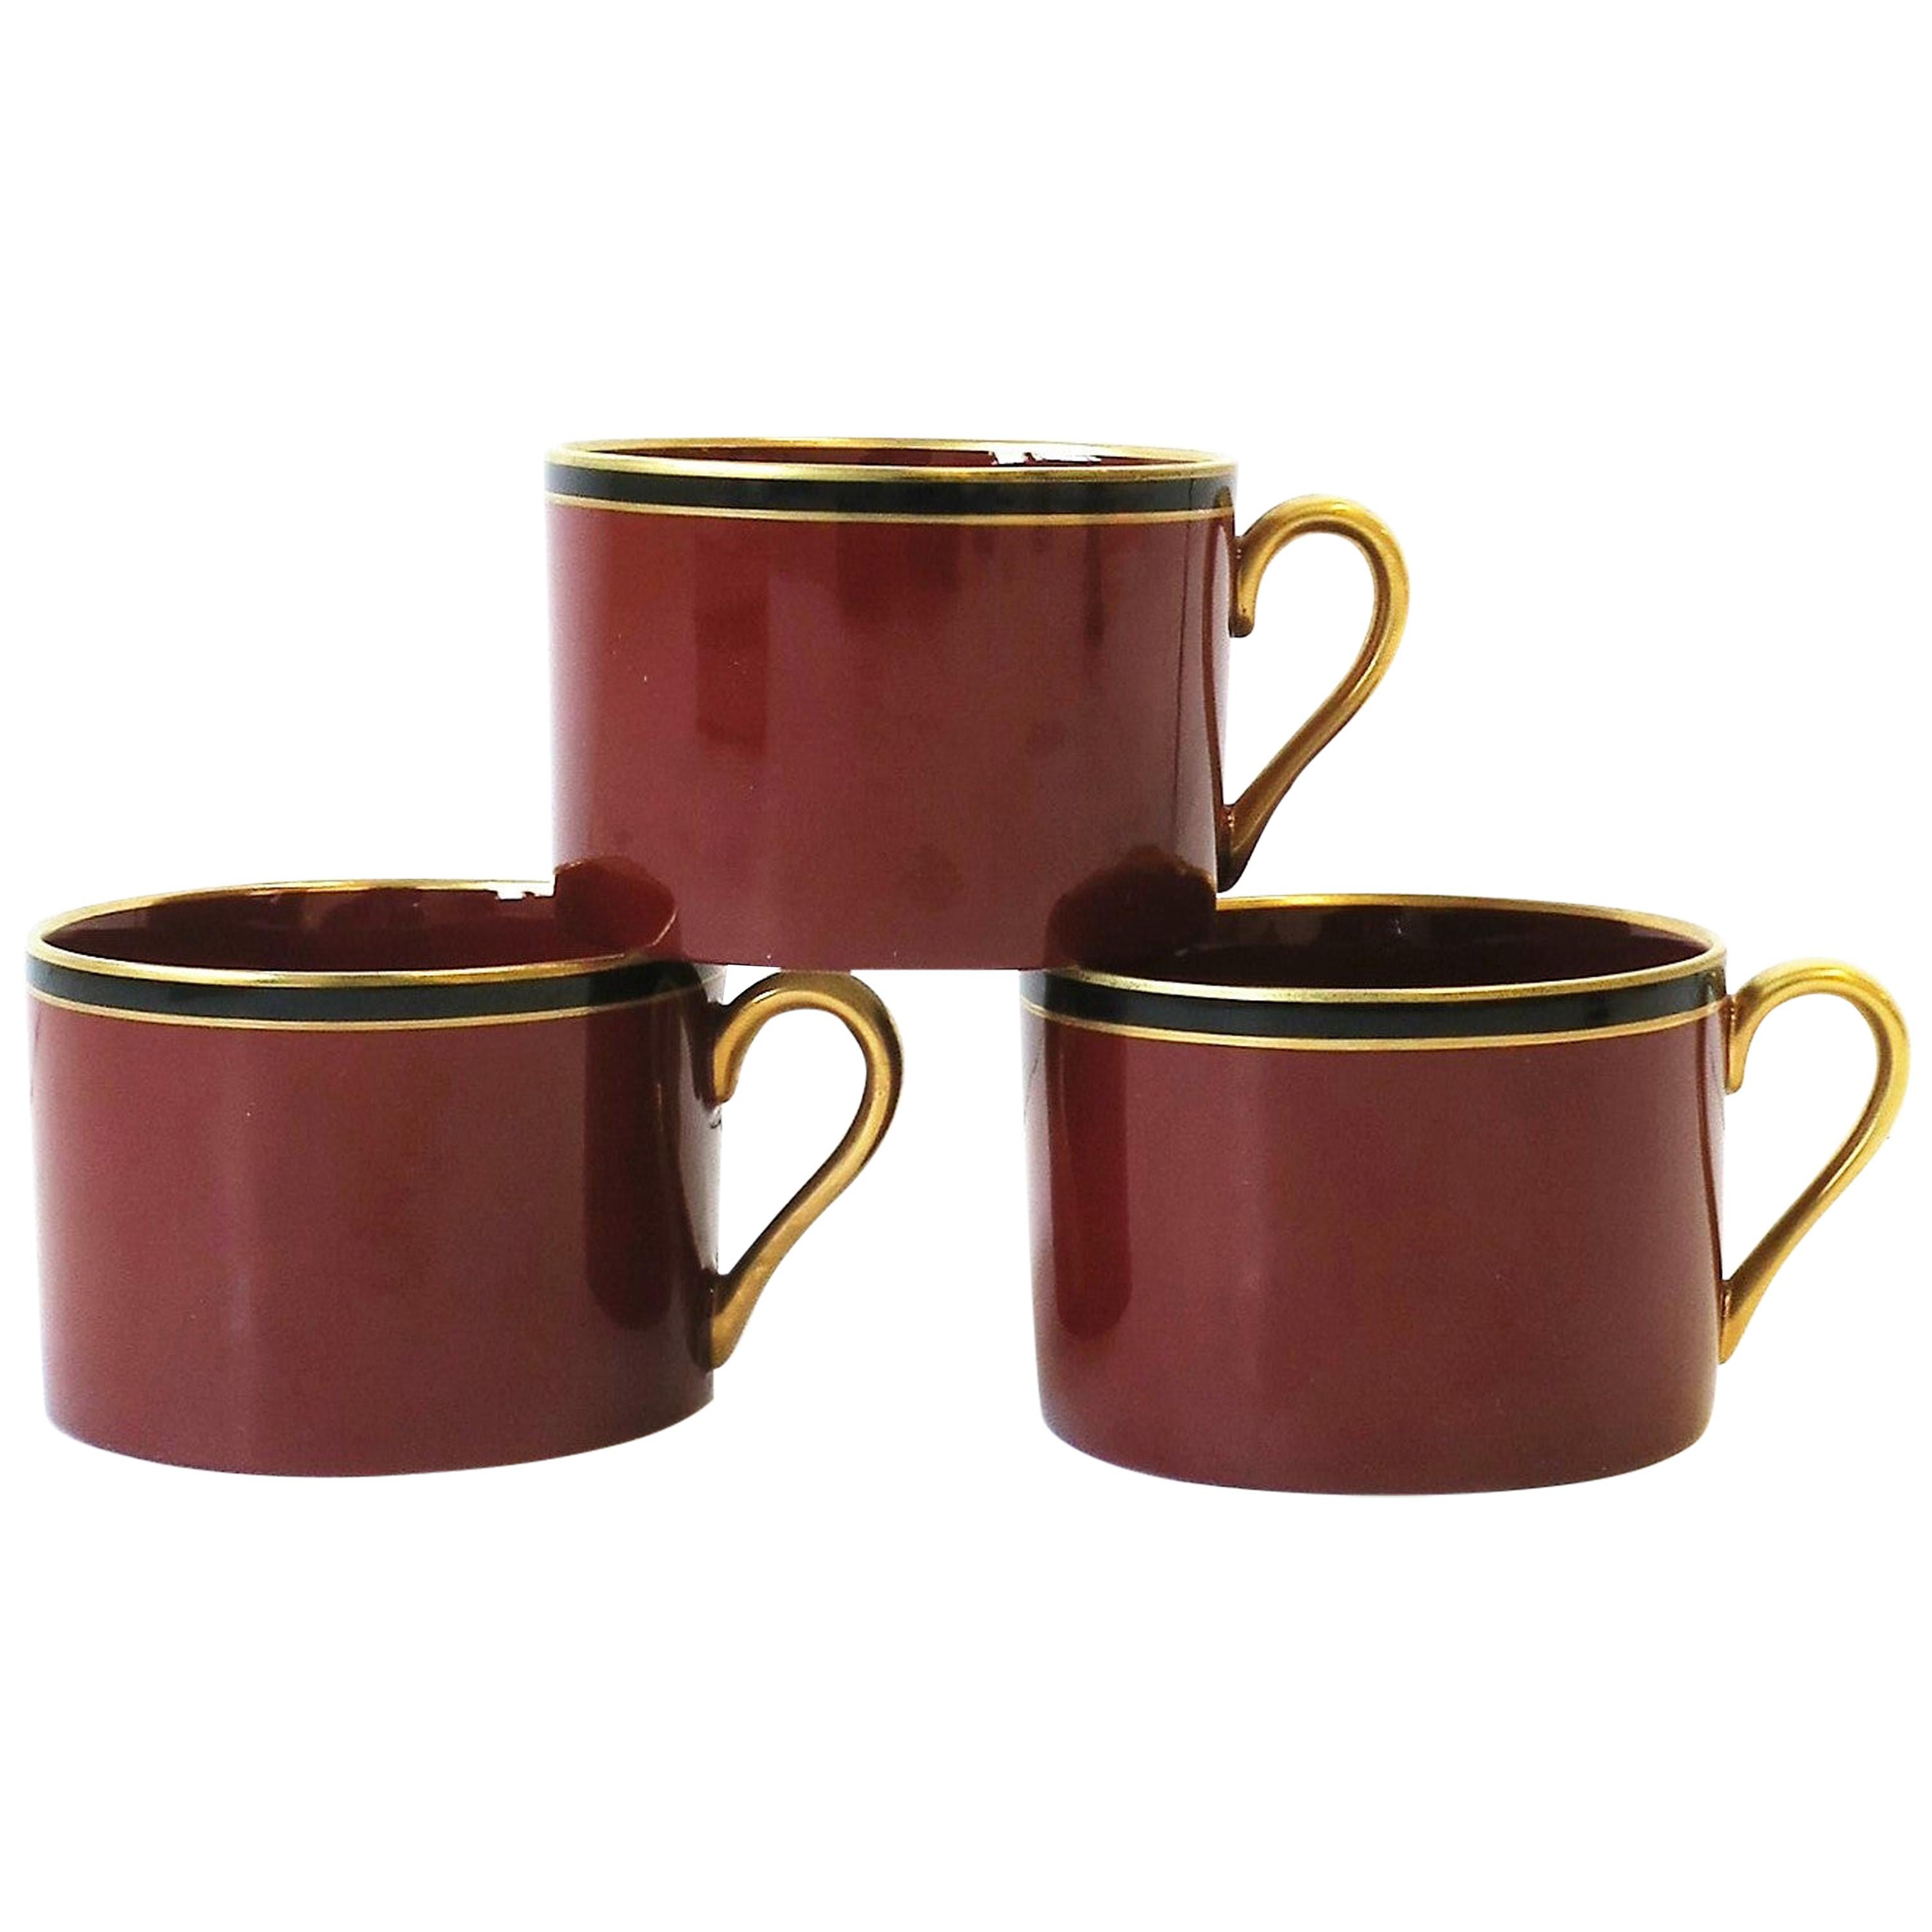 Tasses à café ou à thé en porcelaine rouge, bourgogne, or et noire, ensemble de 3, 1967